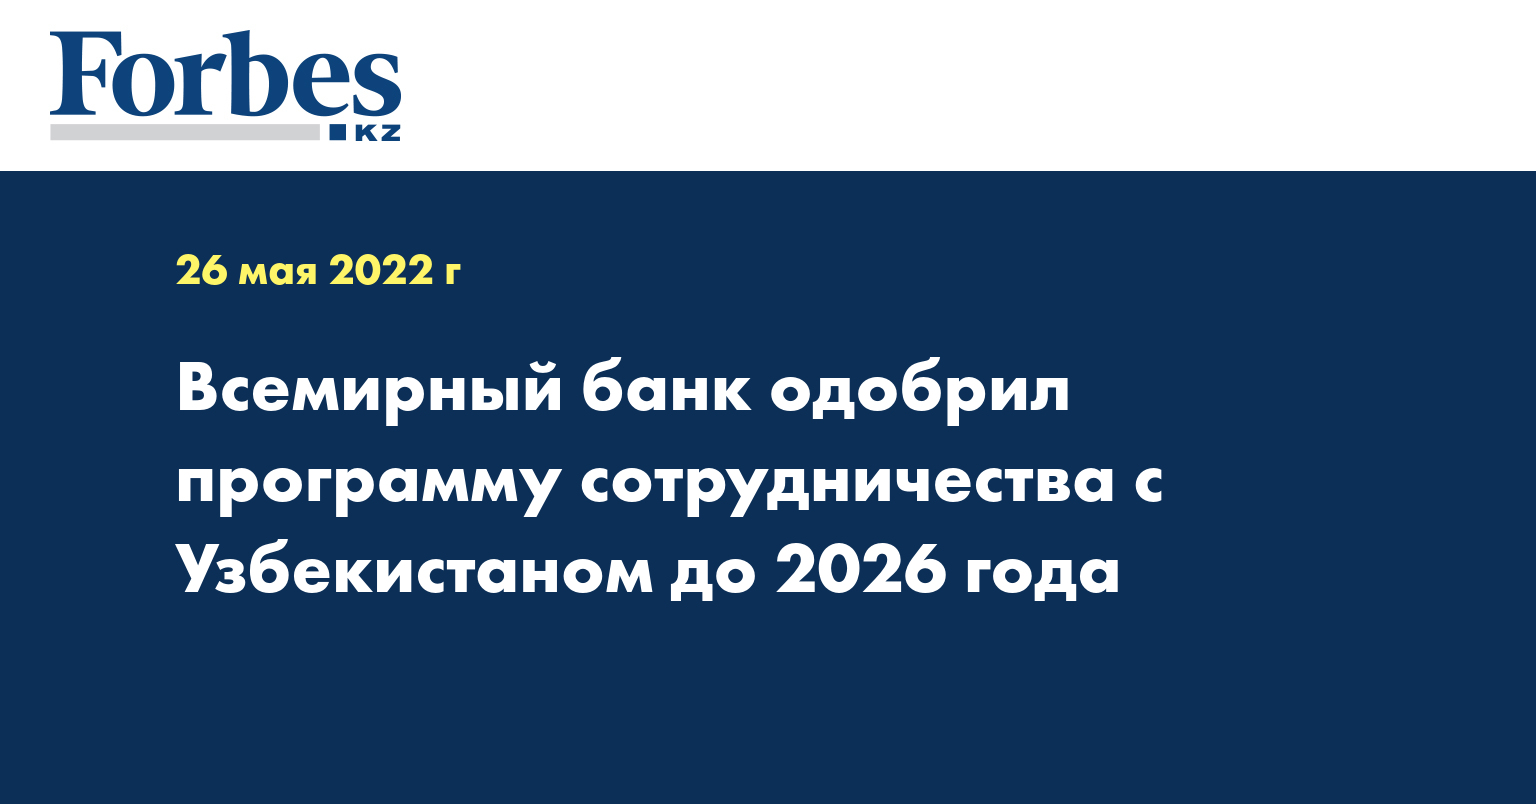 Всемирный банк одобрил программу сотрудничества с Узбекистаном до 2026 года